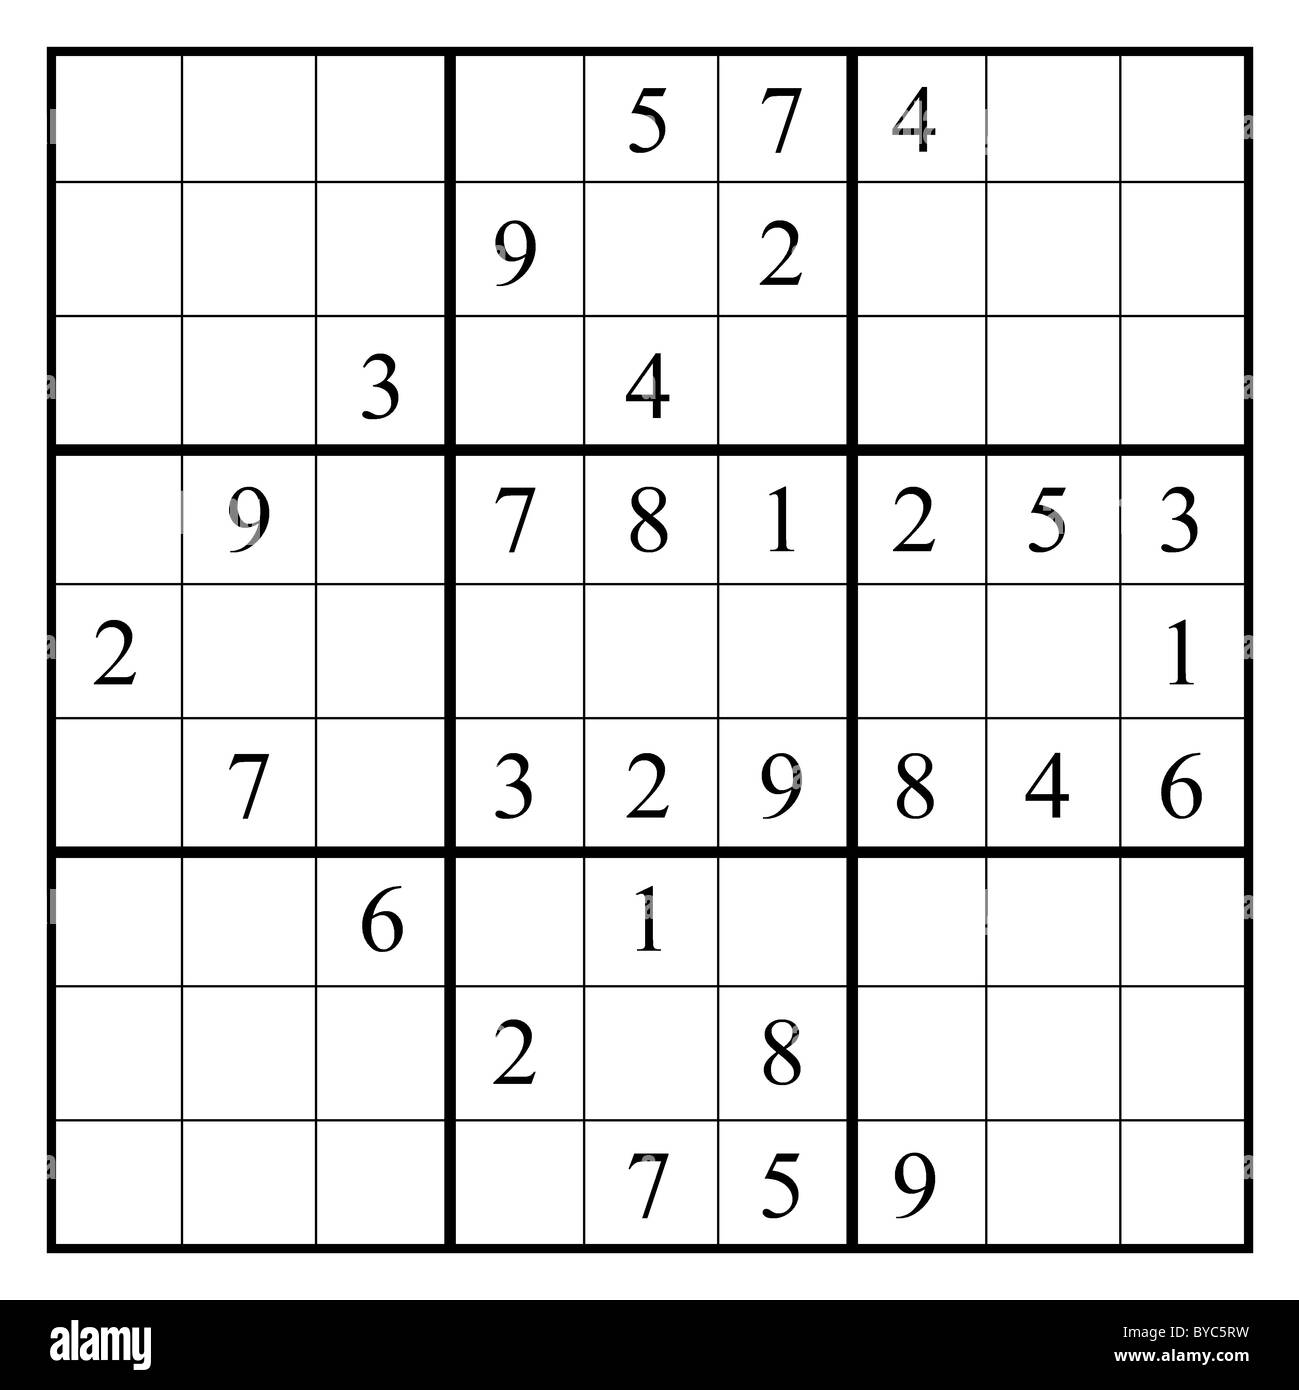 Dispositivo di puntamento con un puzzle sudoku. Questo layout di sudoku fornisce una rivolta verso sinistra freccia. La soluzione è su Alamy come tramitec5T2. Foto Stock